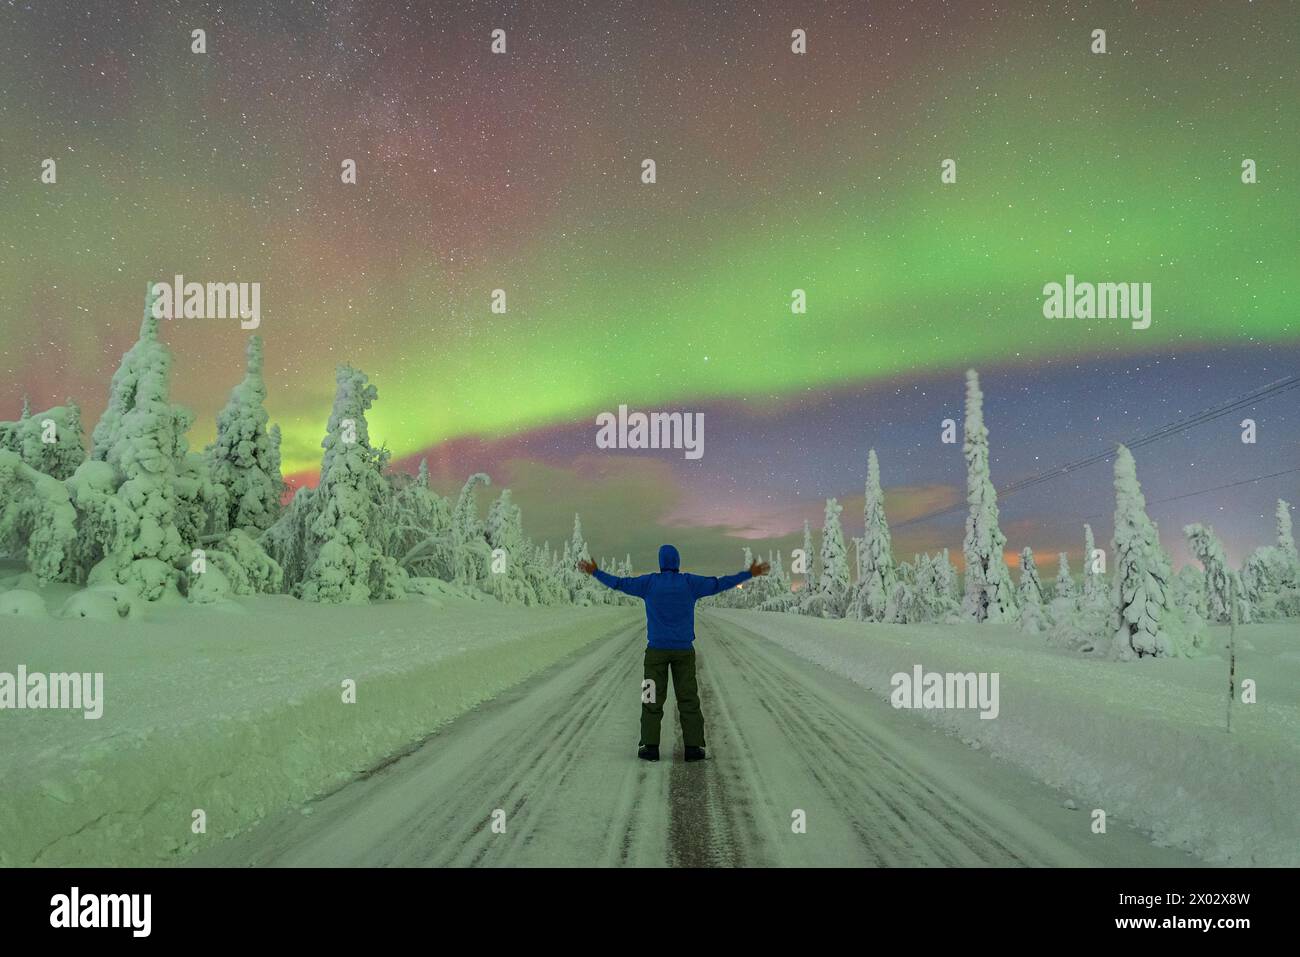 Rückansicht eines Menschen mit ausgestreckten Armen mitten auf einer leeren, rutschigen Straße, die den arktischen Wald durchquert und dabei die Polarlichter bewundert Stockfoto